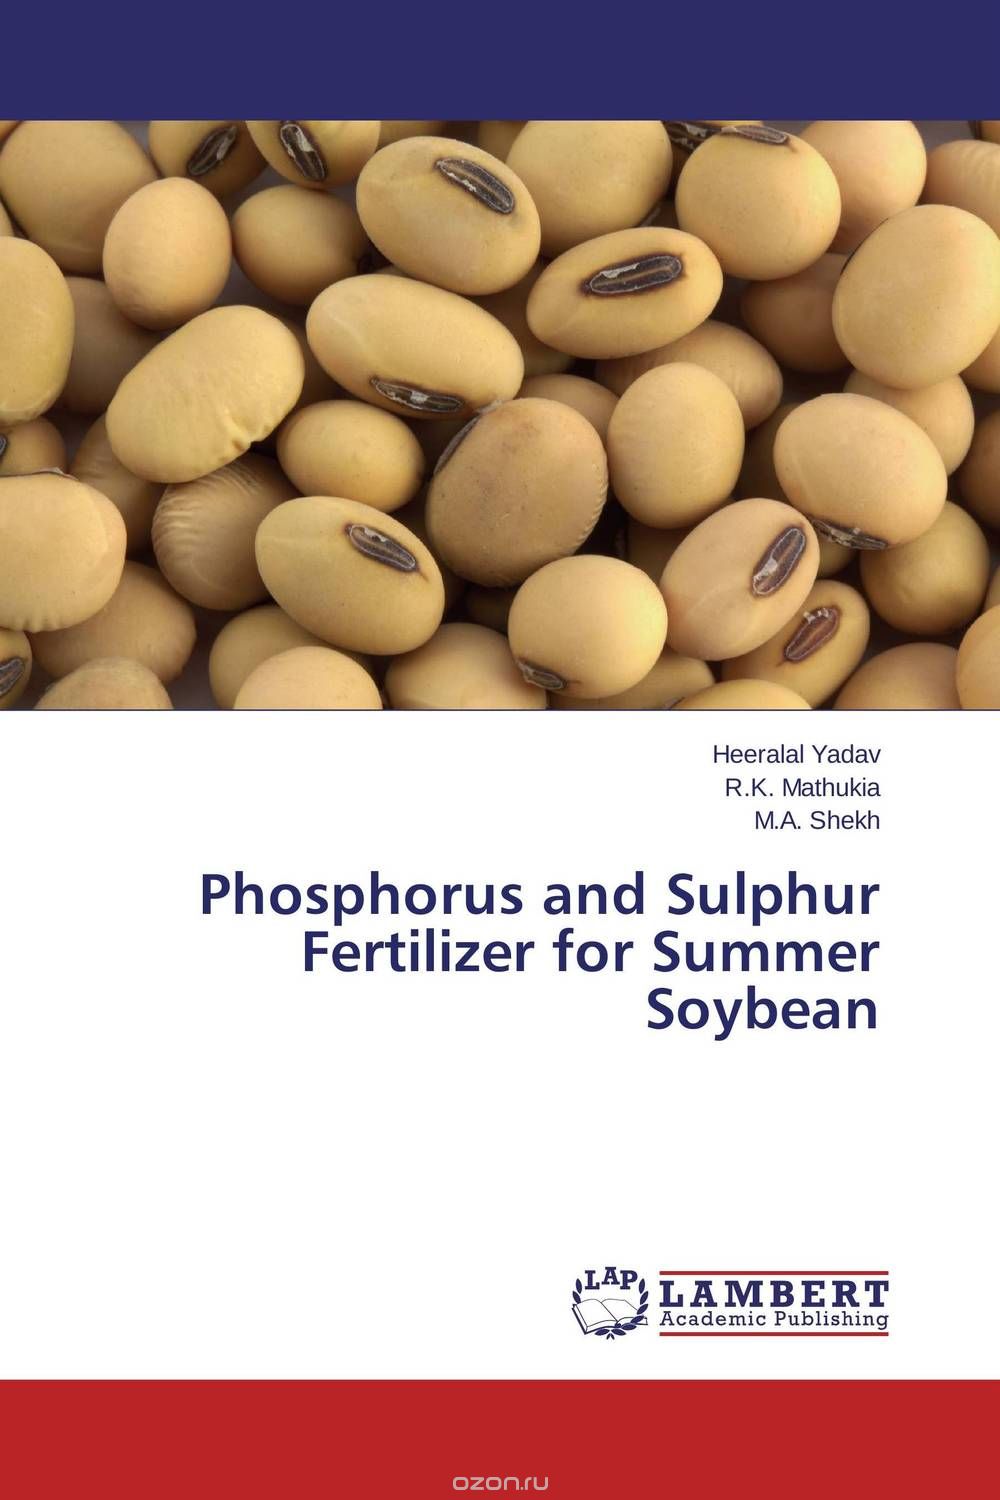 Скачать книгу "Phosphorus and Sulphur Fertilizer for Summer Soybean"